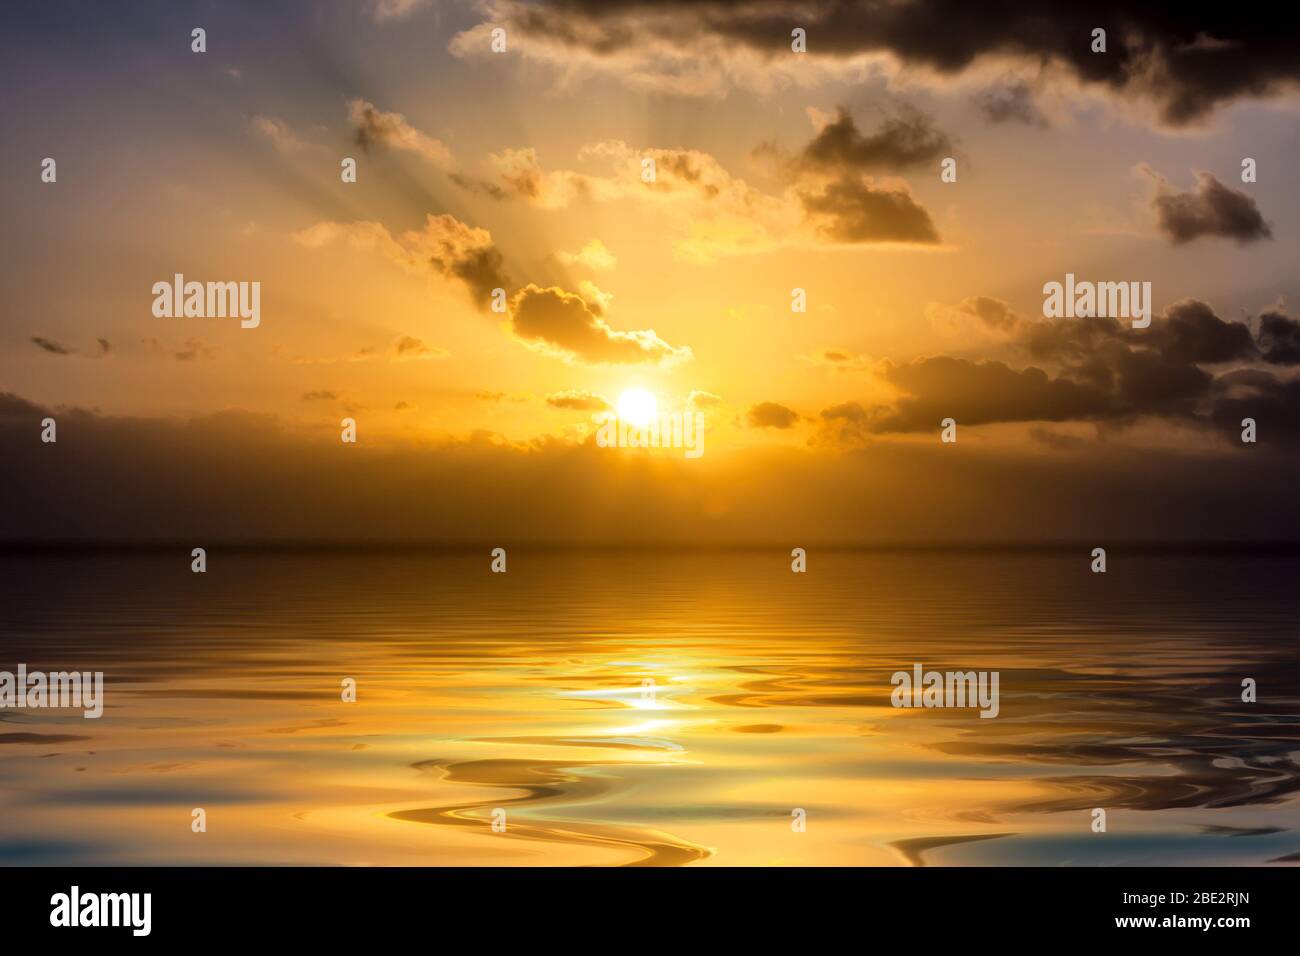 Ein Sonnenuntergang über dem Ozean Stock Photo